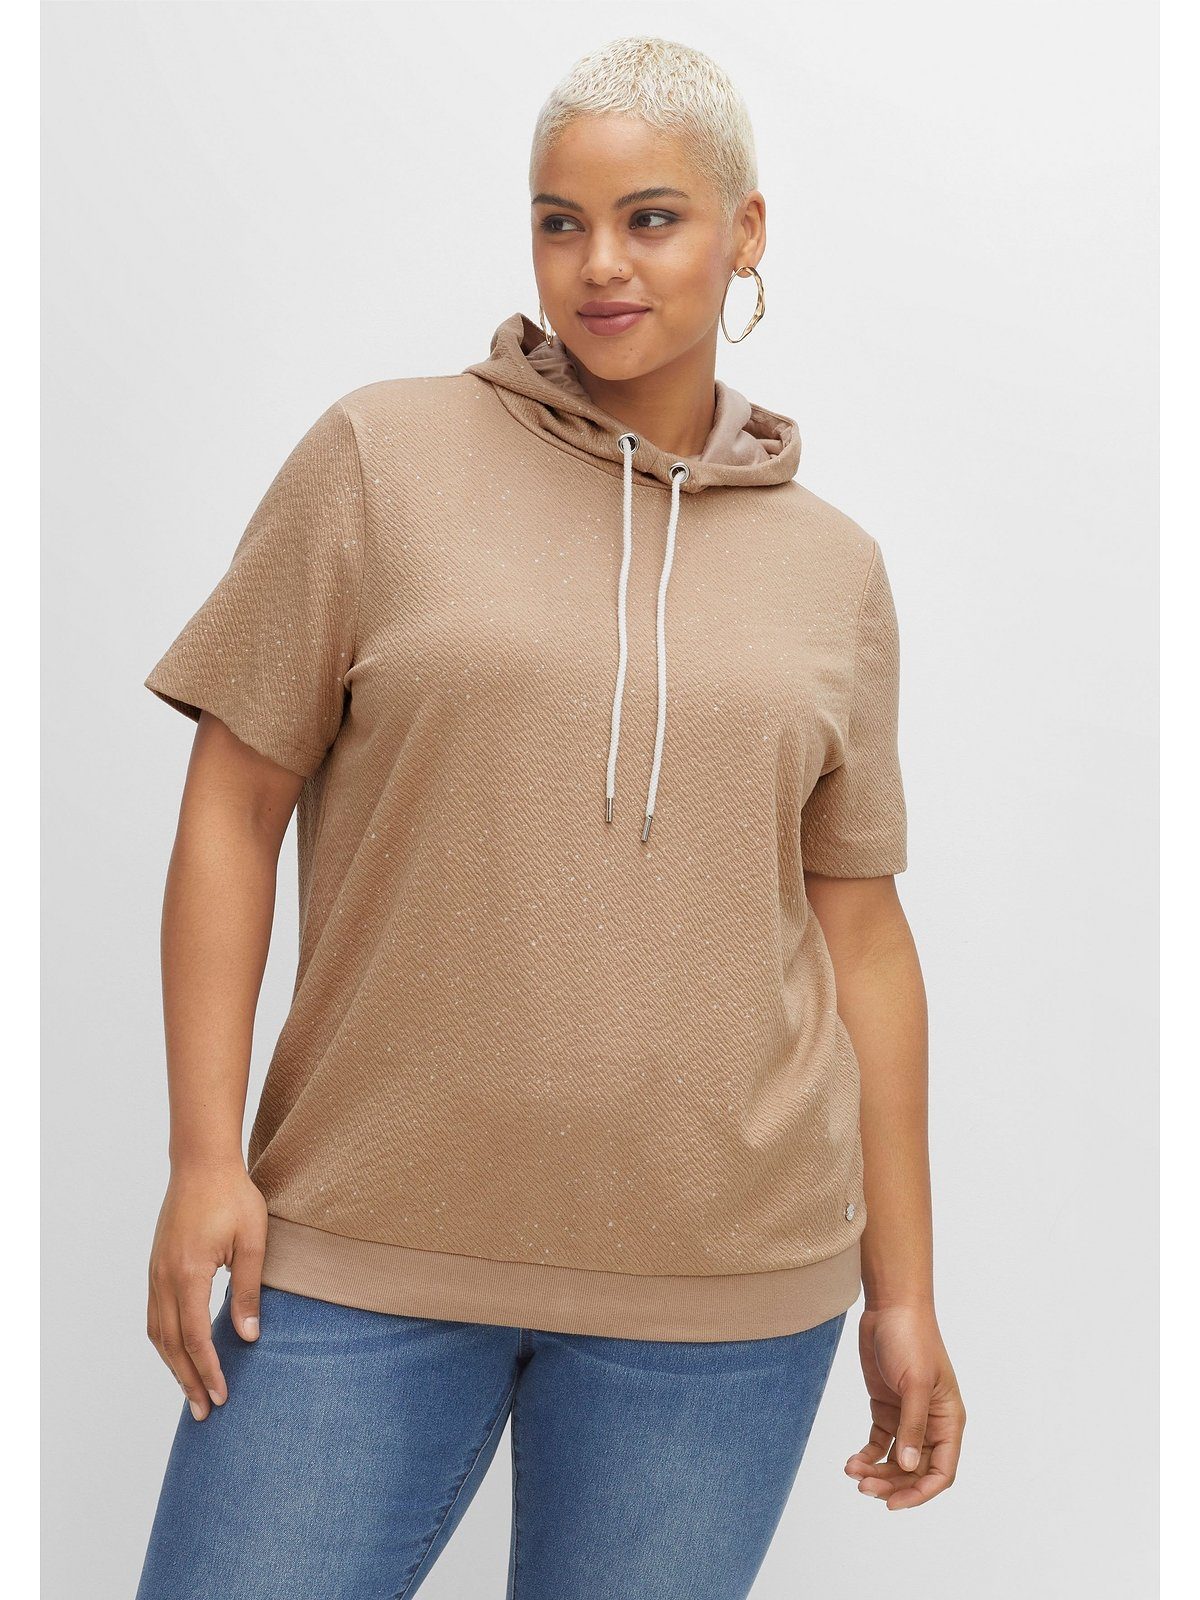 Sheego T-Shirt Große Größen aus leichter Sweatware, mit Kapuze